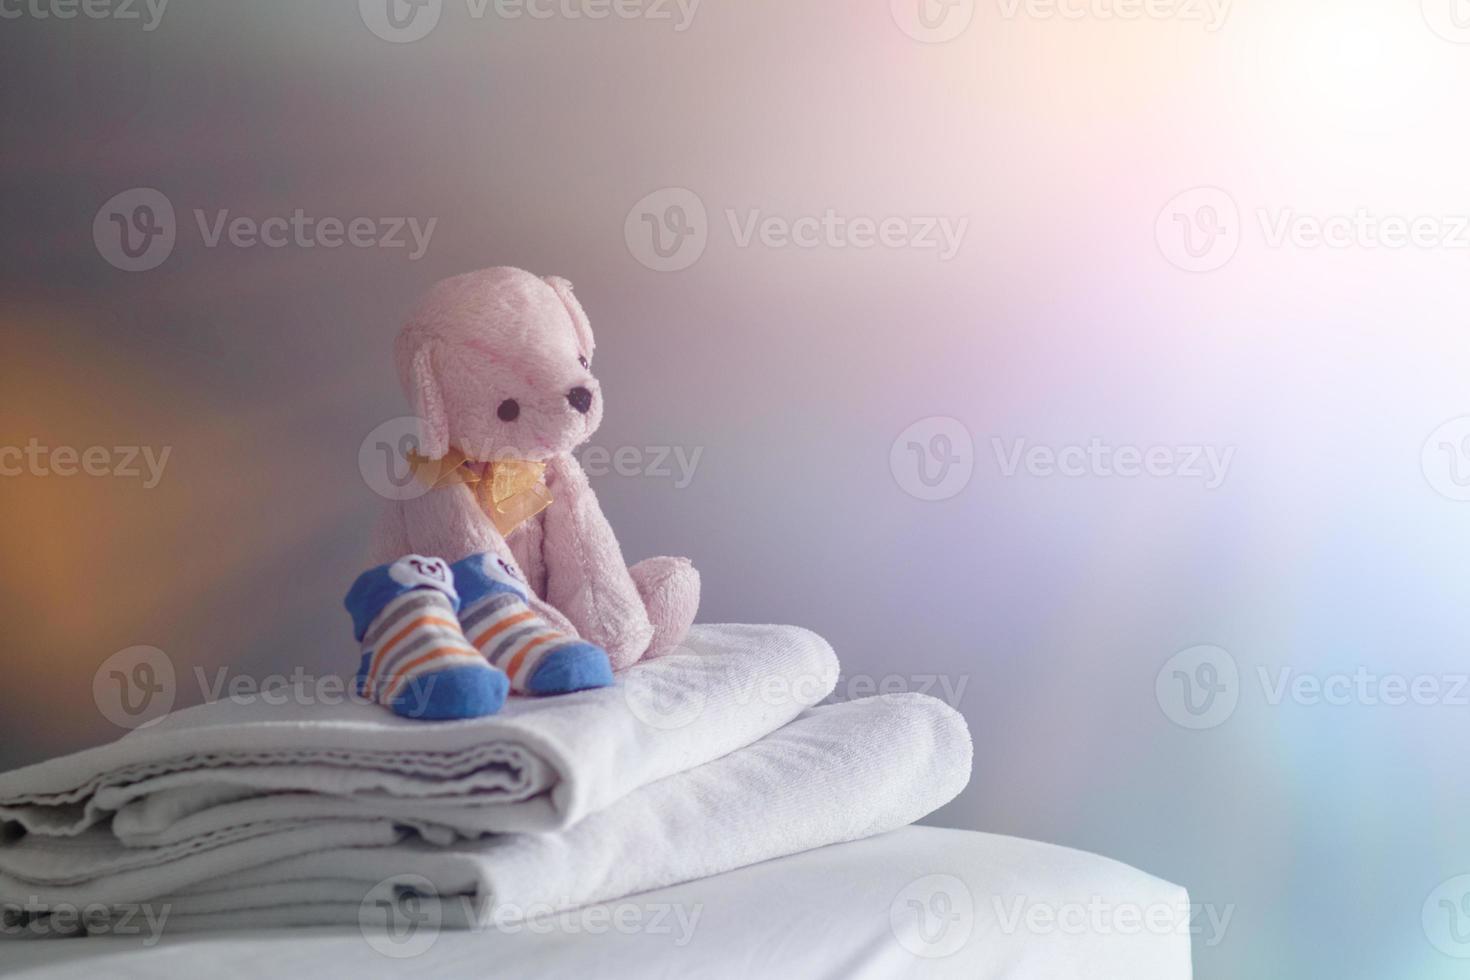 imagem borrada, um ursinho de pelúcia rosa de cabelo curto estava deitado em uma toalha branca no colchão da cama da janela pela manhã, enquanto um ursinho de pelúcia se preparava para sua filha brincar antes de tomar banho. foto